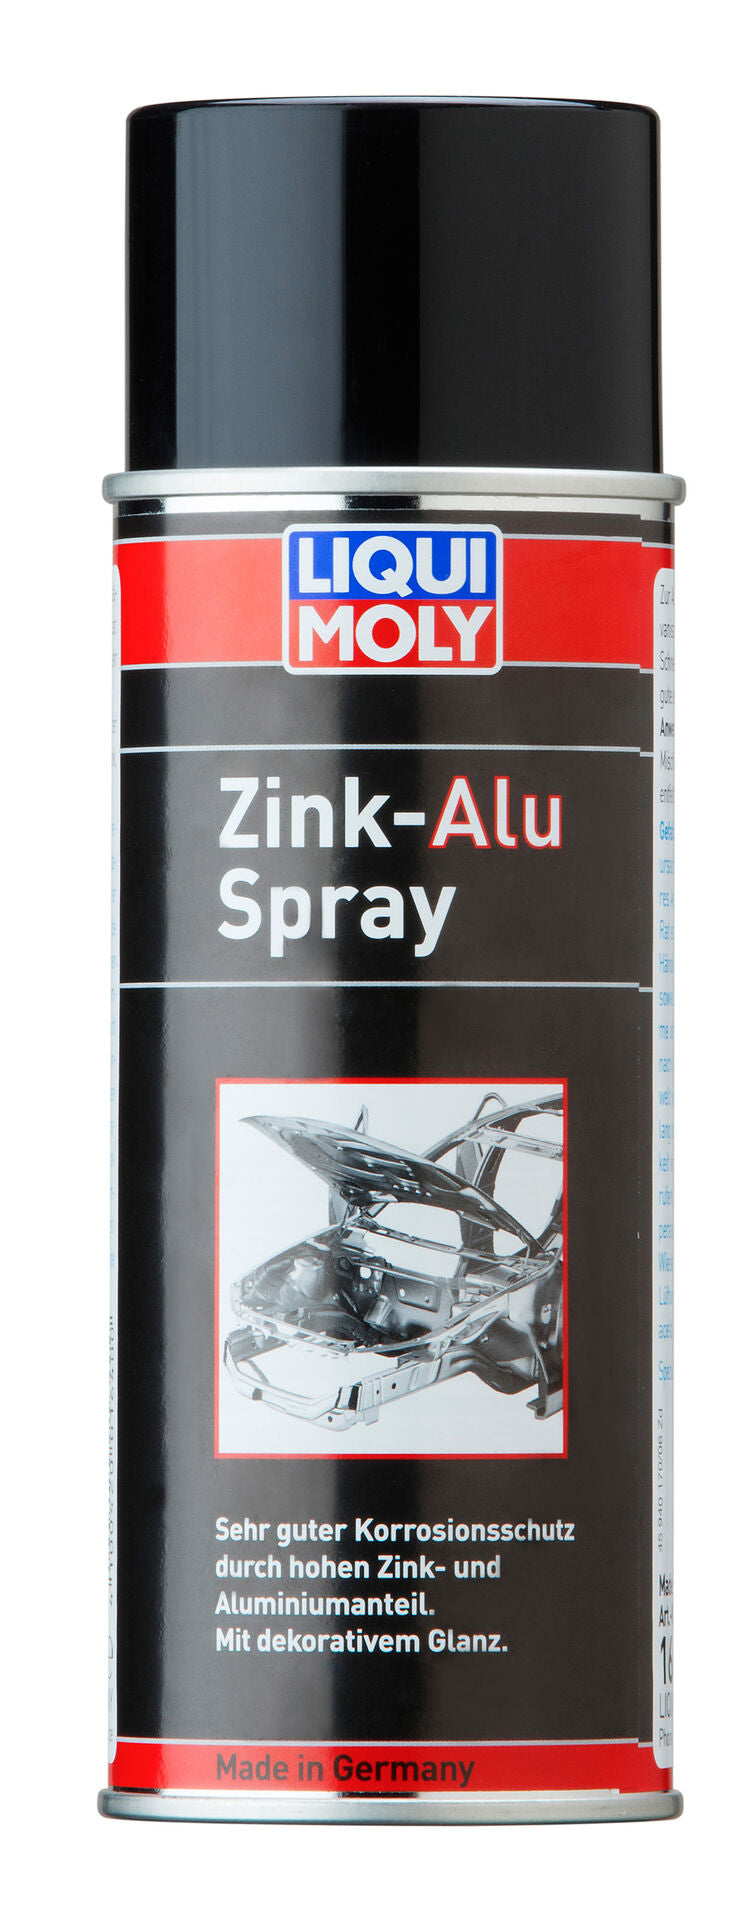 Liqui Moly Zink-Alu Spray